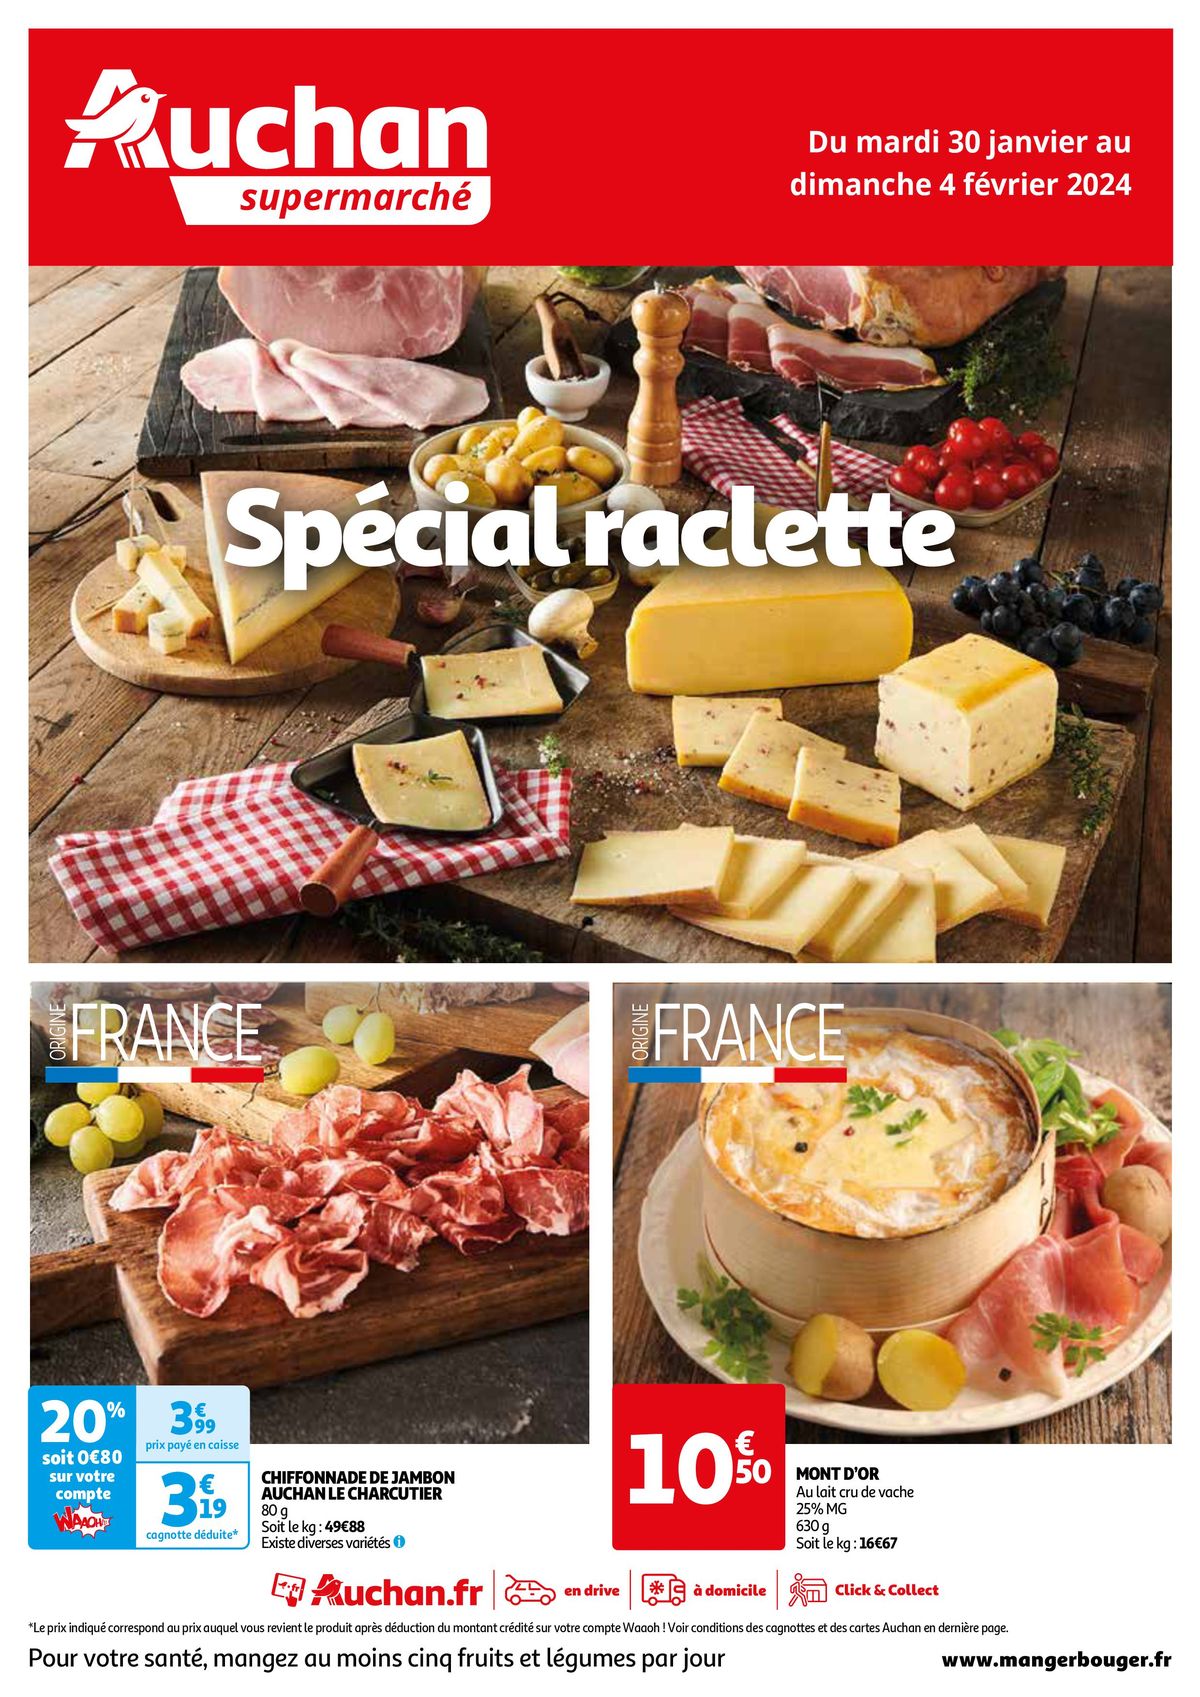 Catalogue Spécial raclette, page 00001